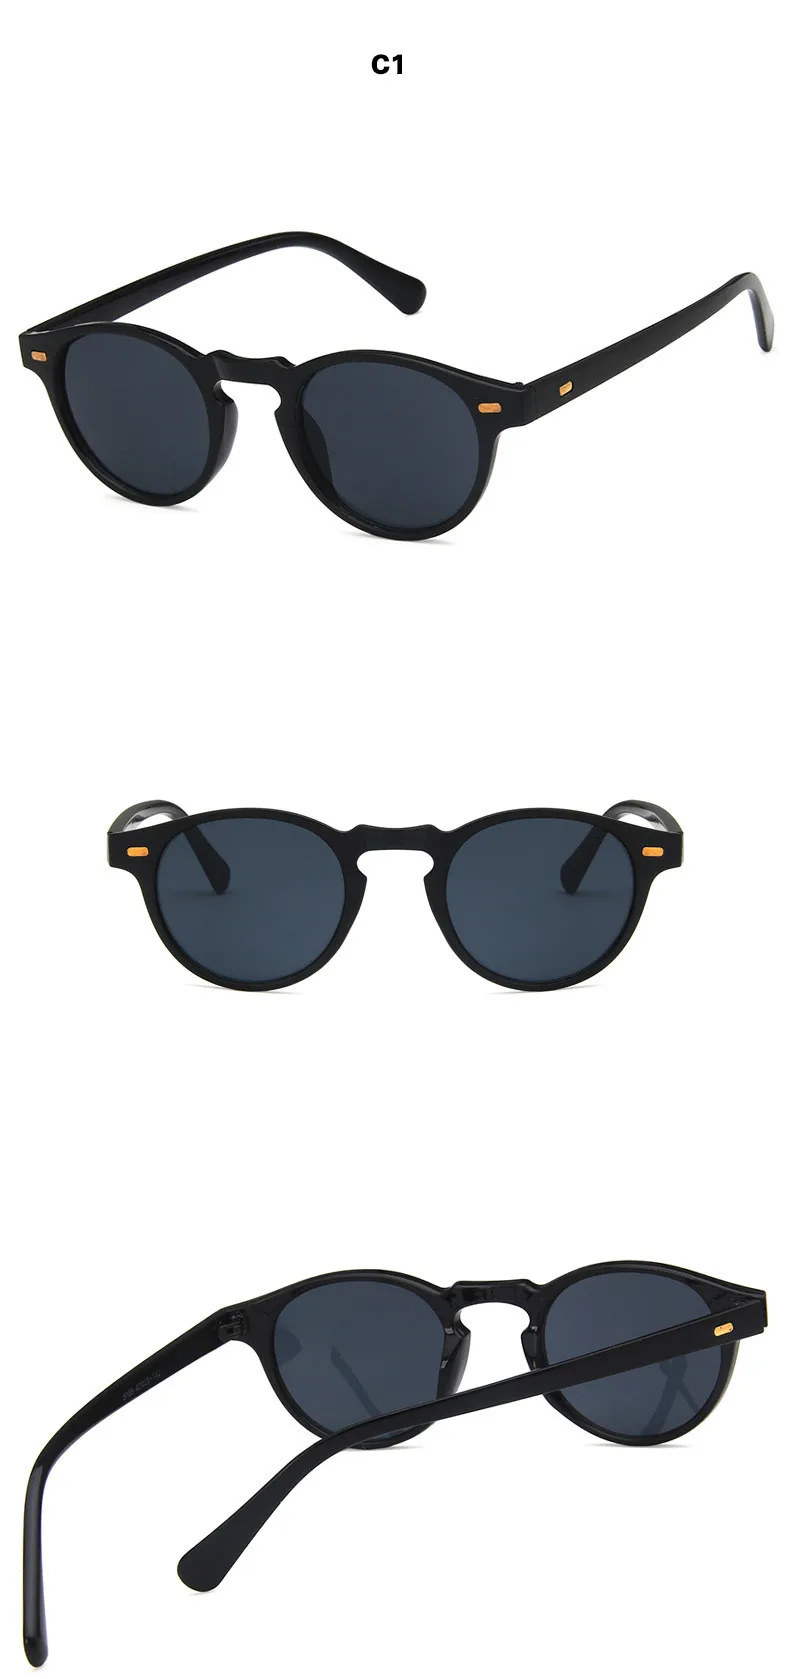 Винтажные круглые линзы, прозрачная оправа, солнцезащитные очки Gregory Peck, фирменный дизайн, мужские и женские солнцезащитные очки, Ретро стиль, gafas oculos